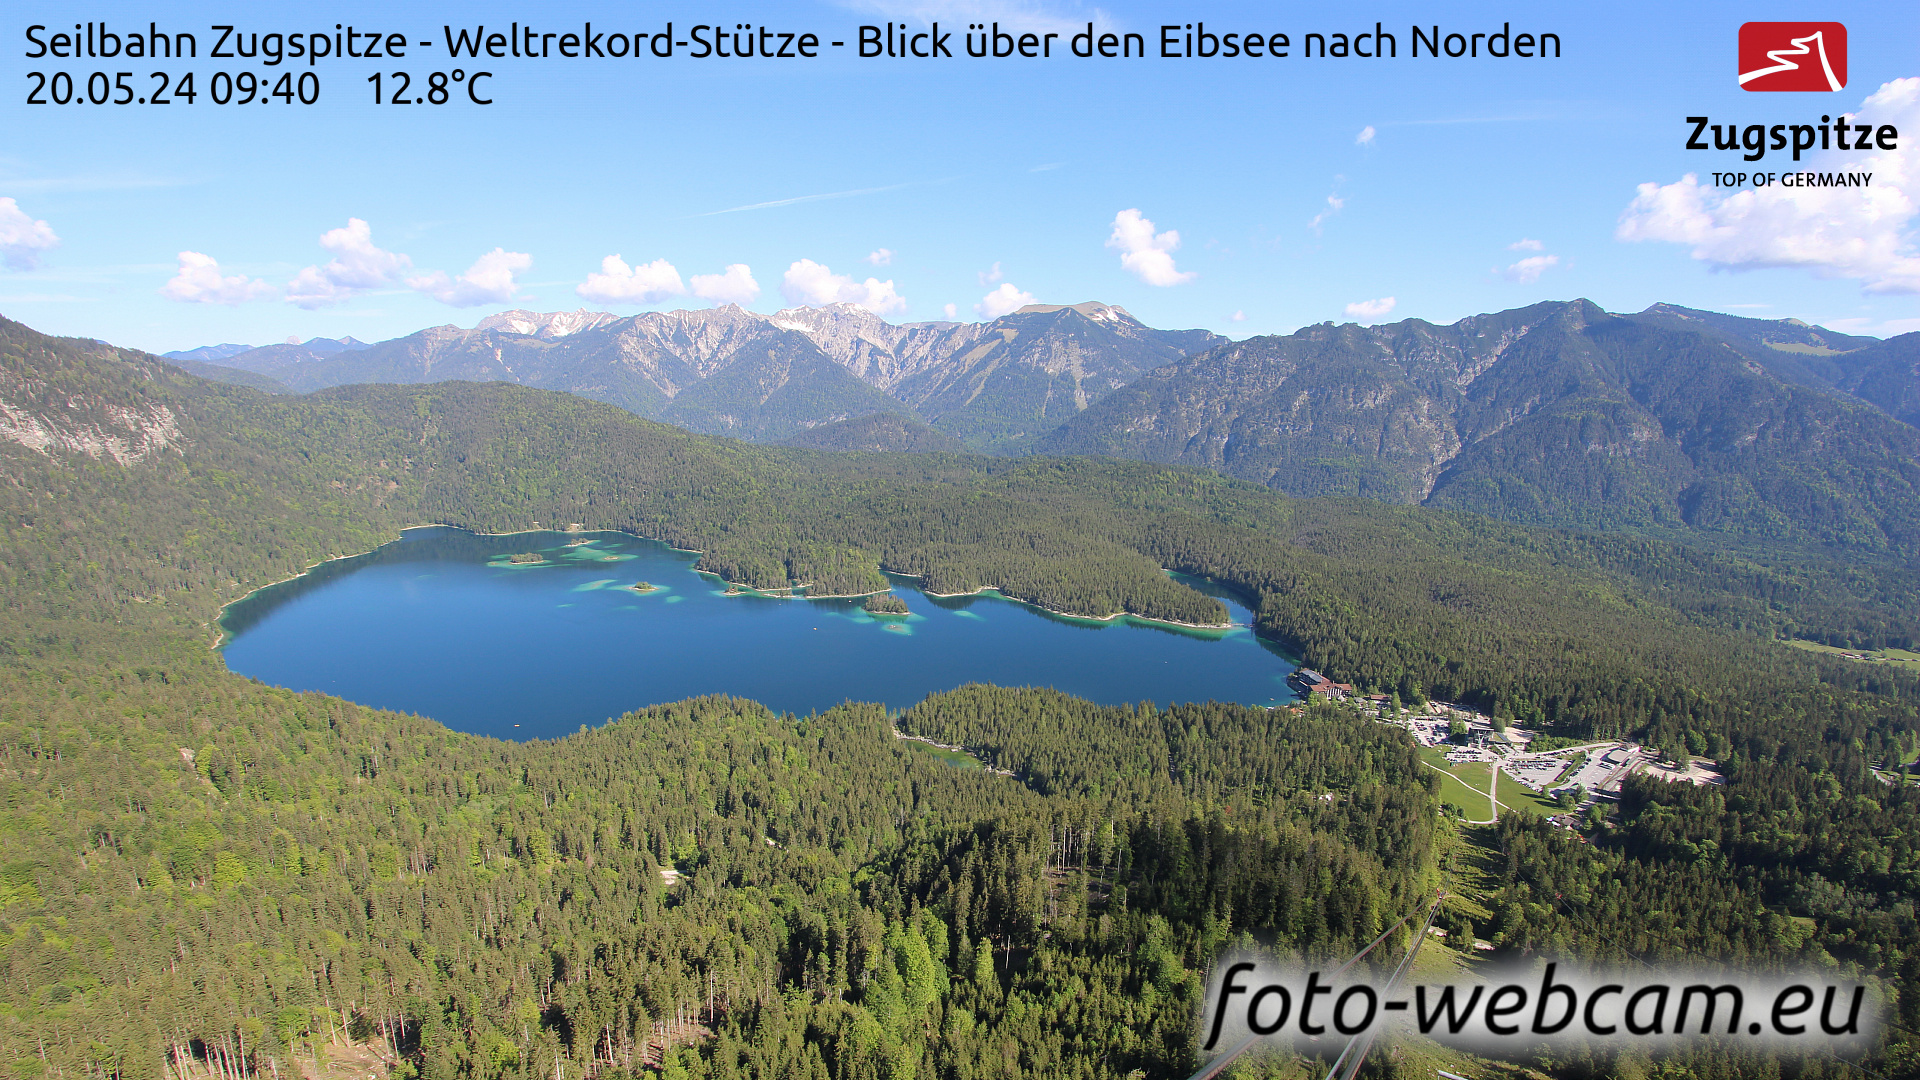 Zugspitze Wed. 09:49